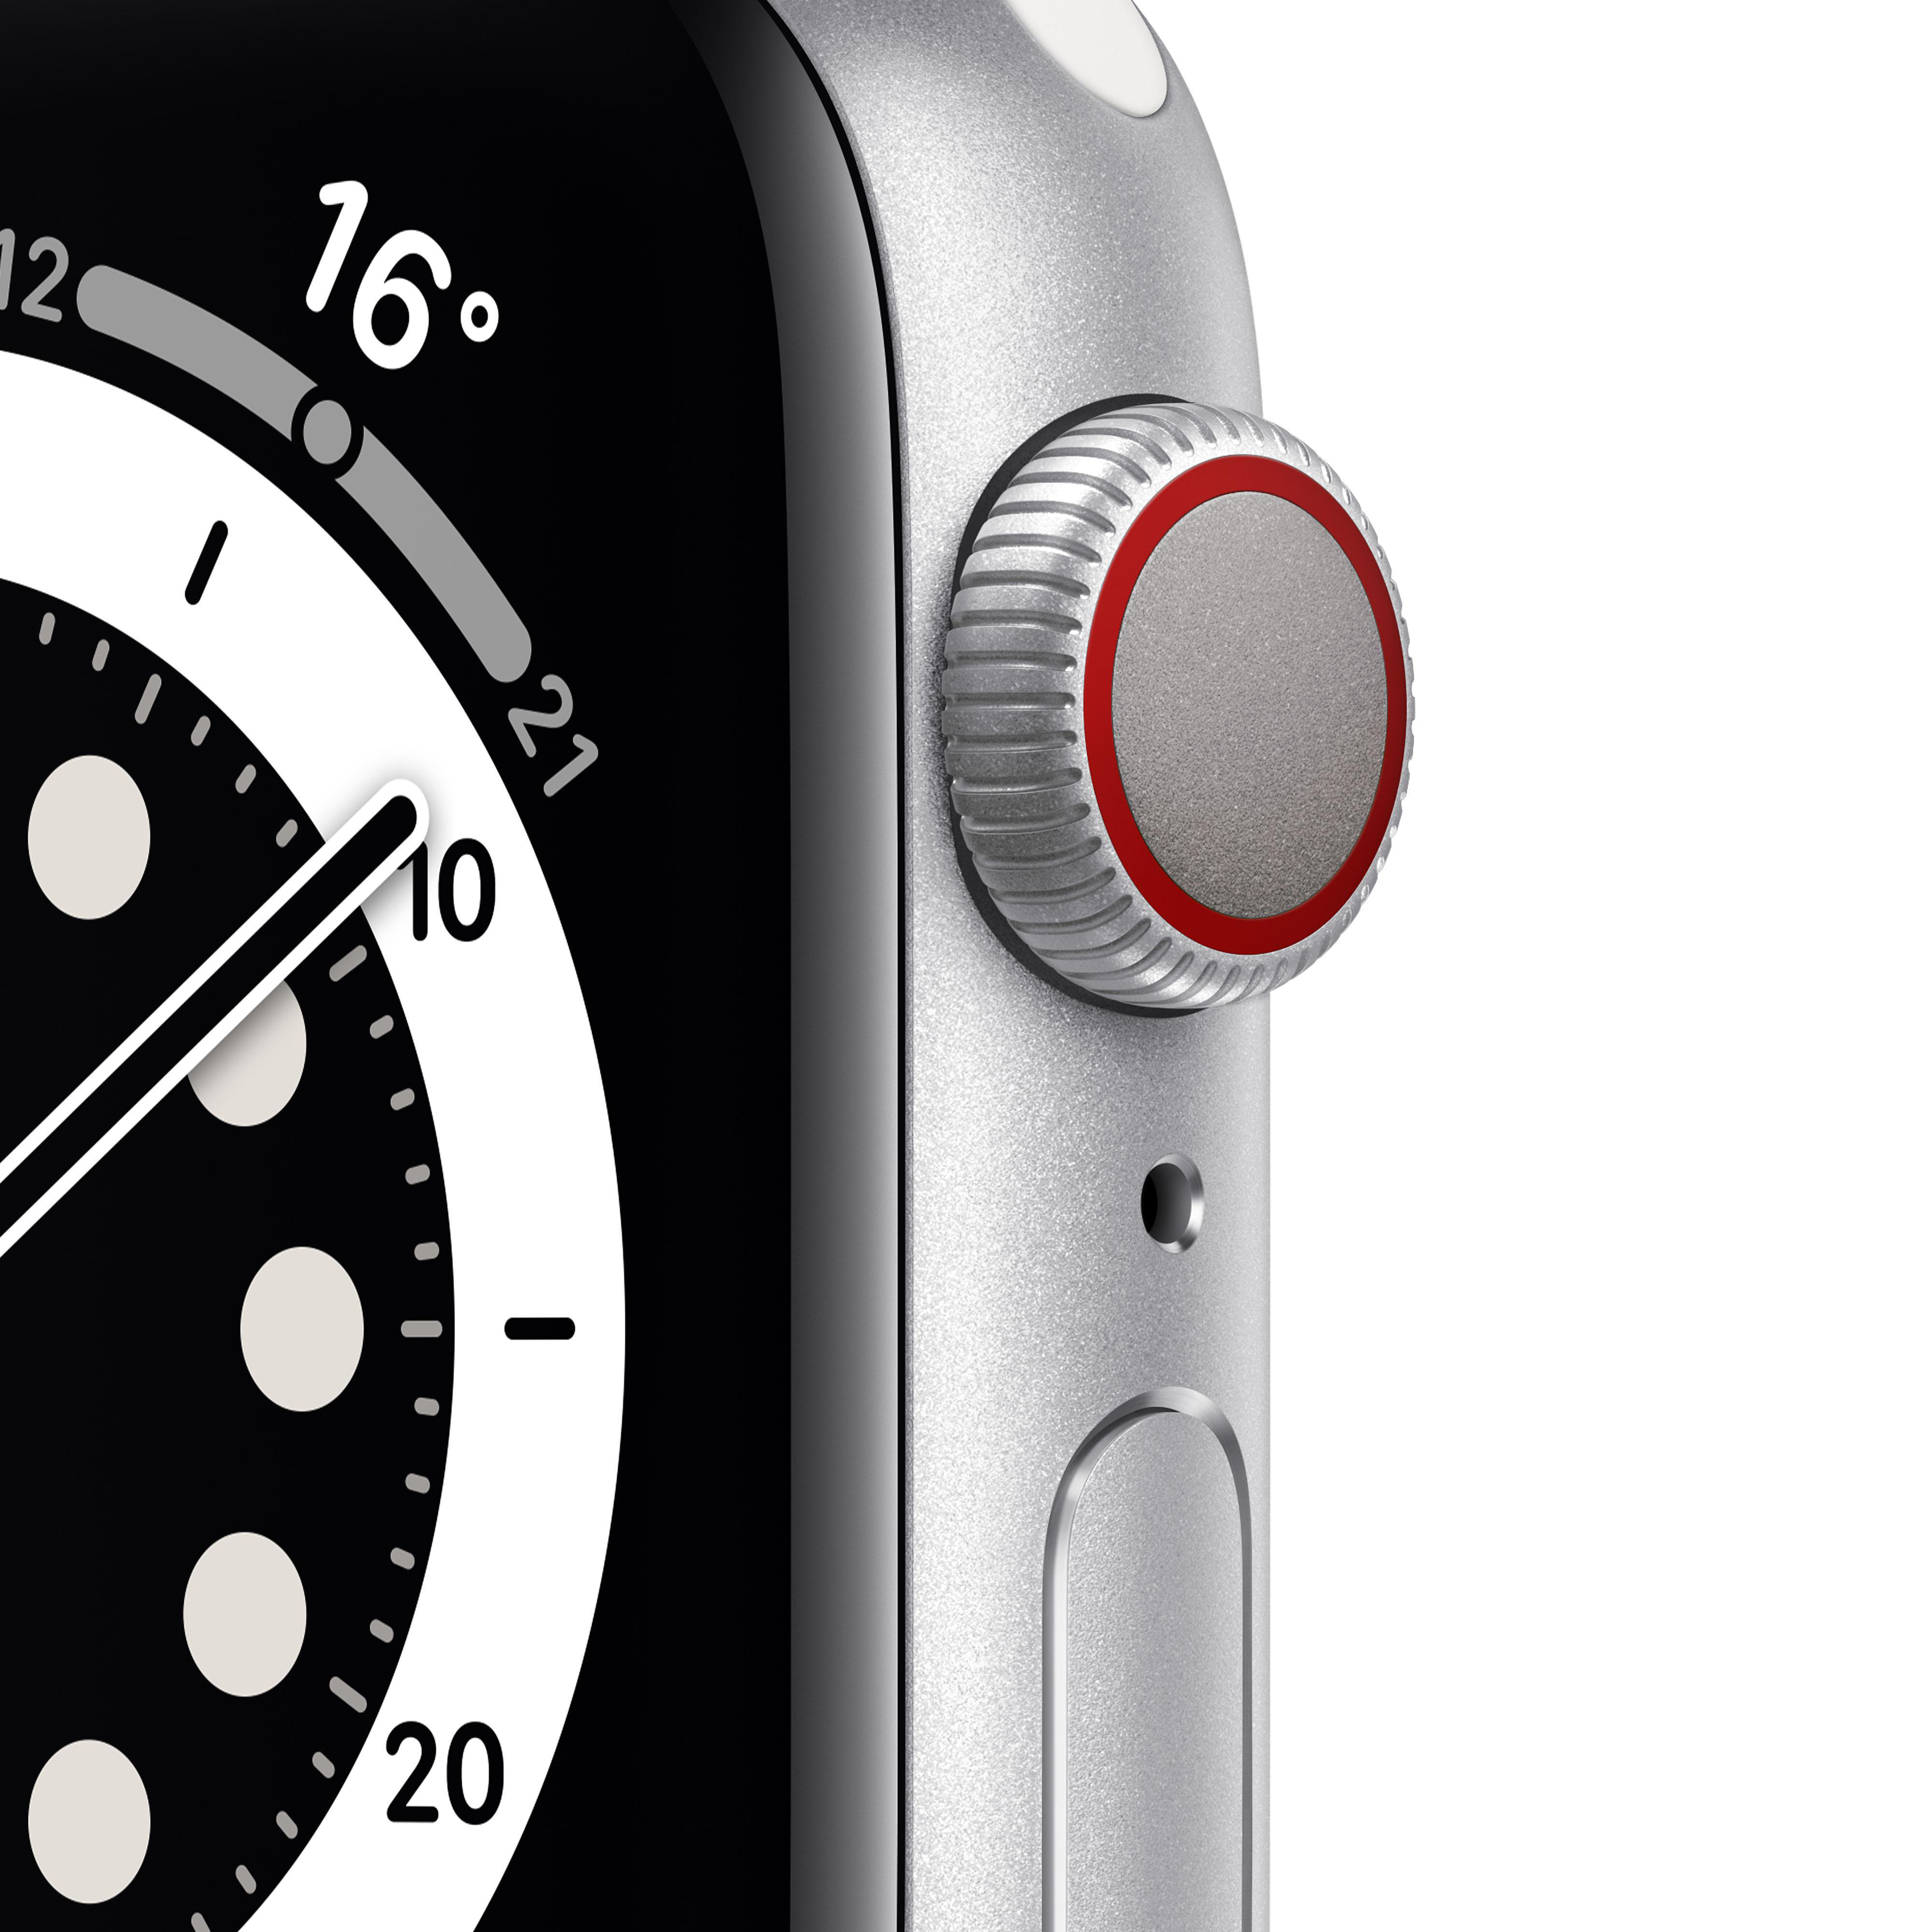 40mm 6 Gehäuse: Silber + Armband: Series Watch 200 Smartwatch (GPS Fluorelastomer, APPLE 130 Cellular) Aluminium mm, - Weiß,